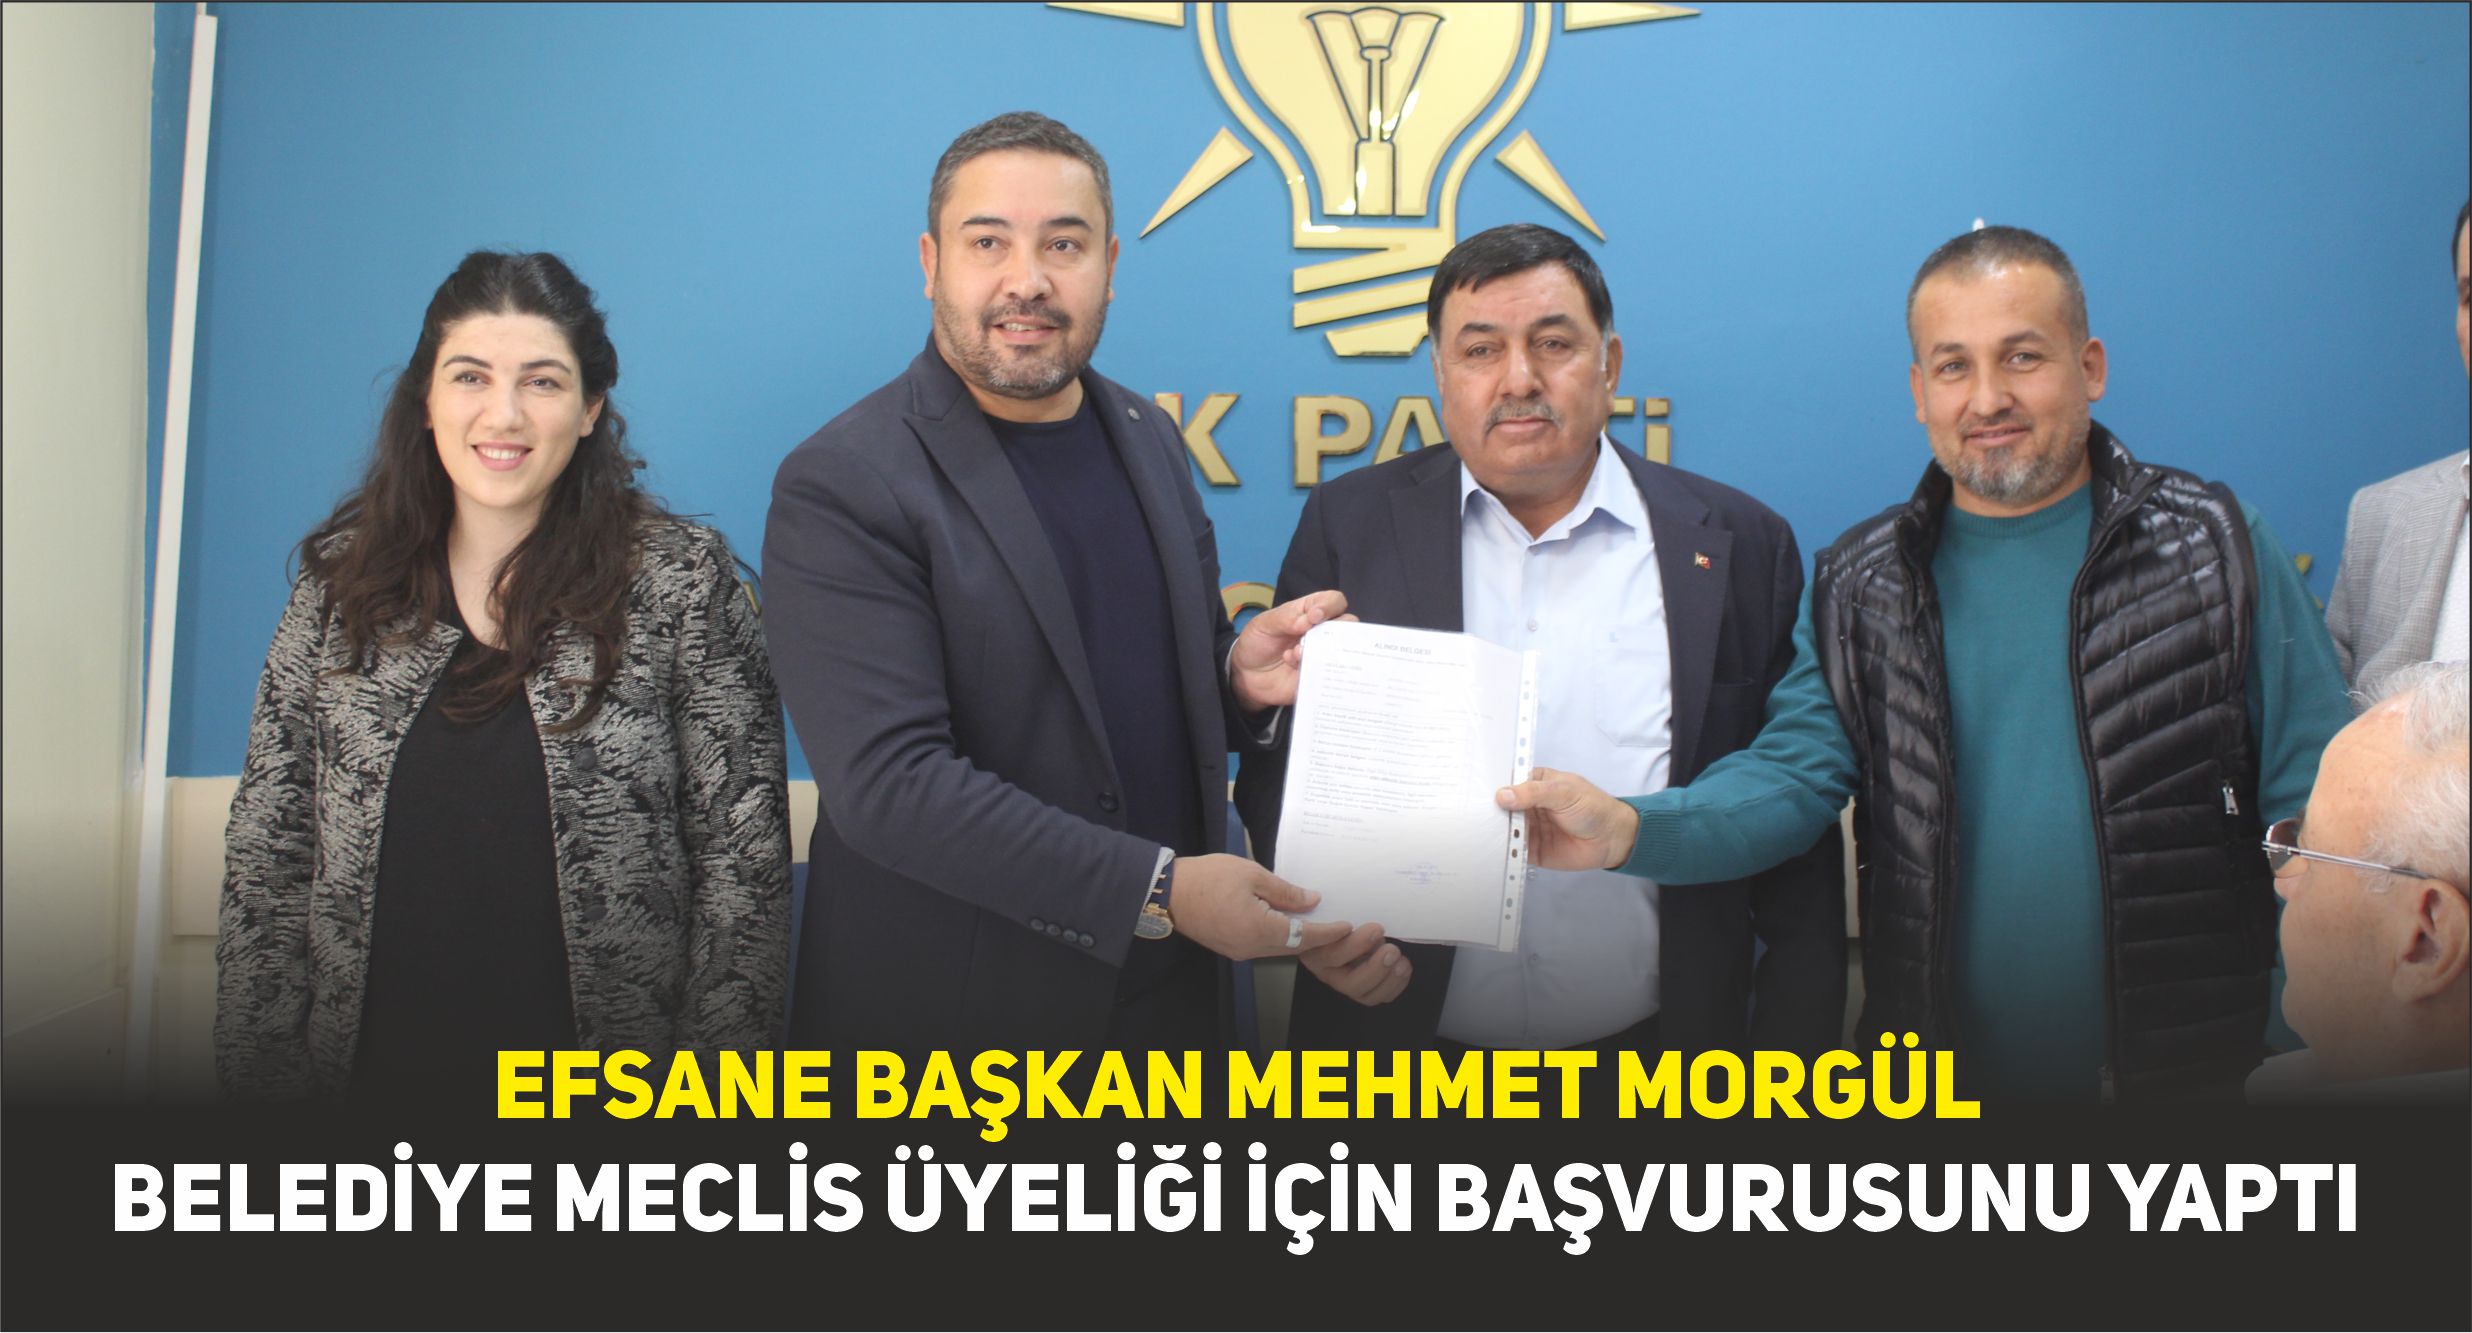 Efsane Başkan Mehmet Morgül, “Sesiz Kalan Meclis Üyesi Olmayacağım”